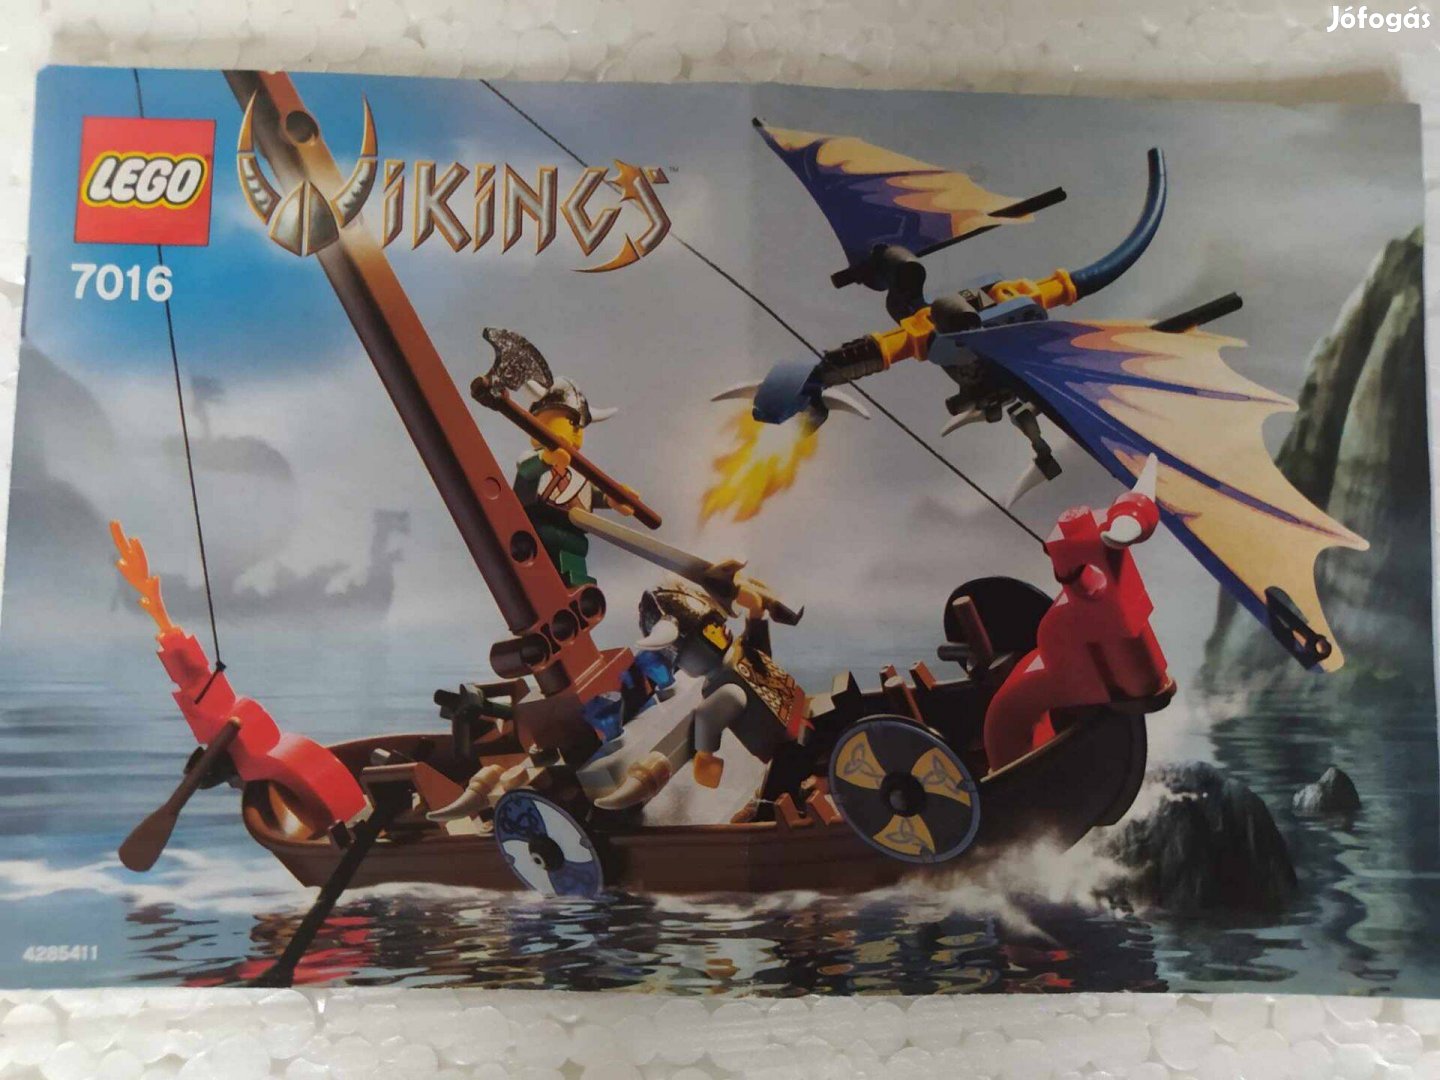 Lego Viking 7016